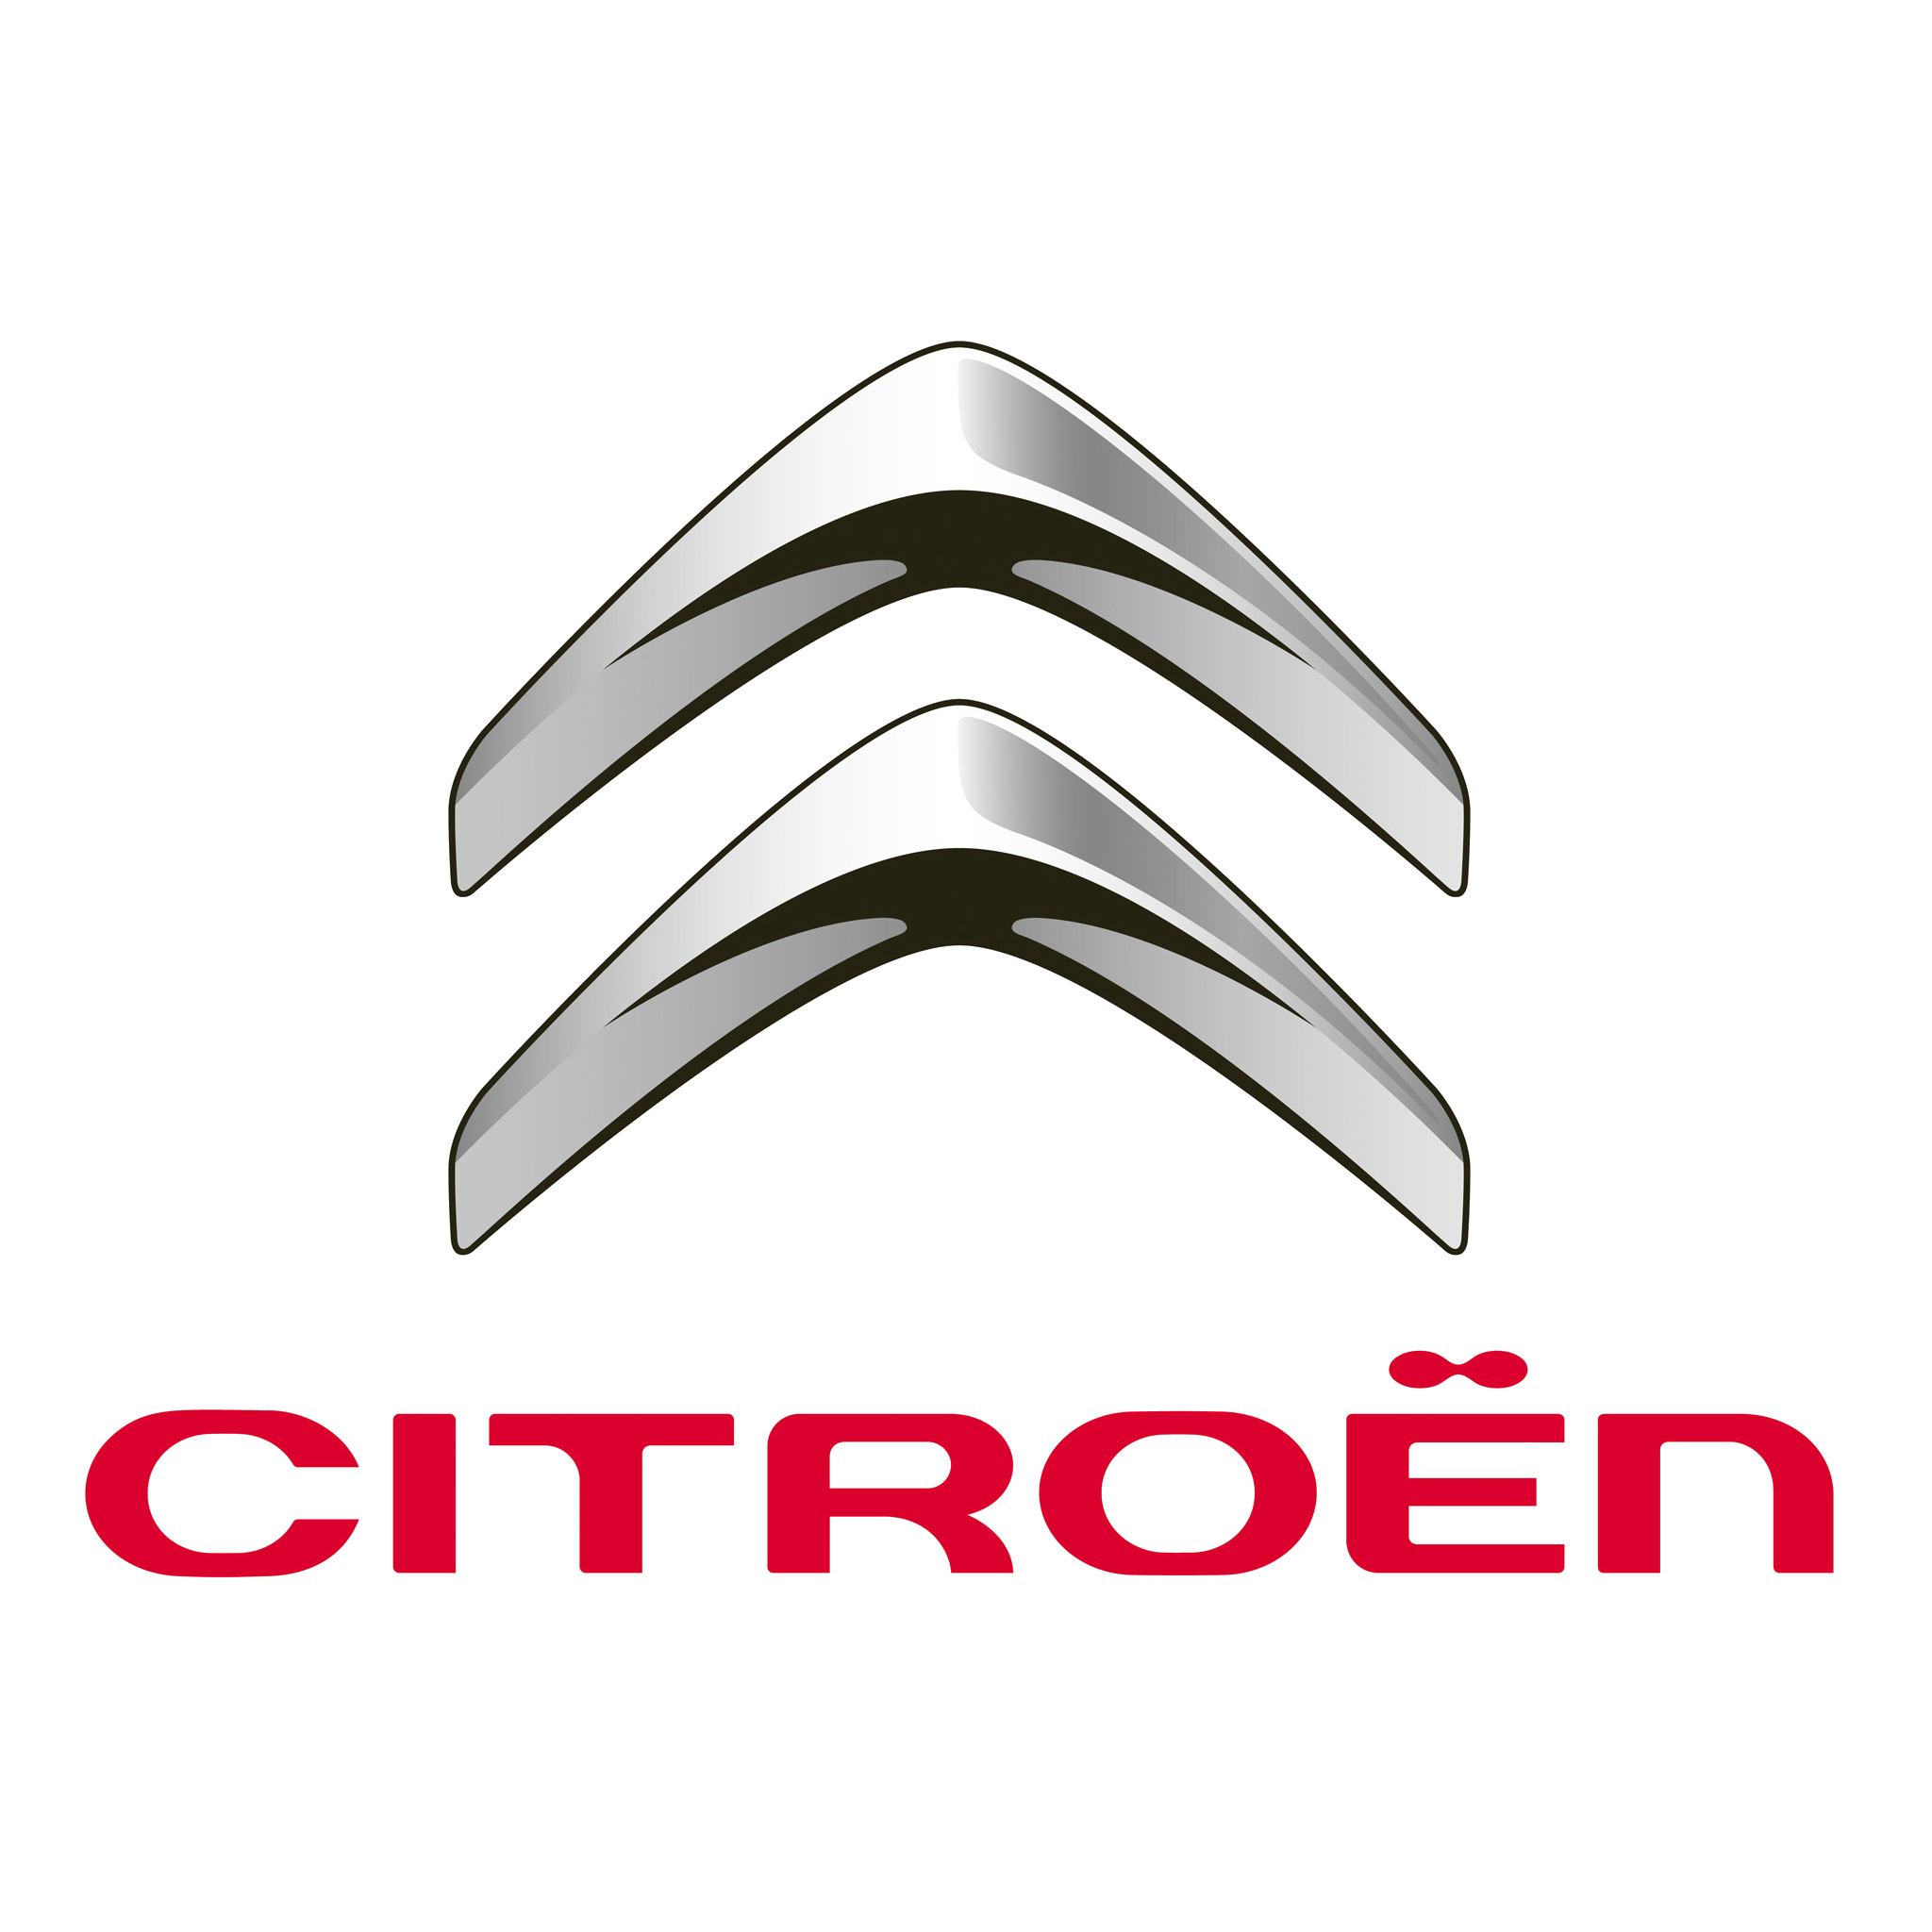 Citroen-logo-2009-2048x2048.png